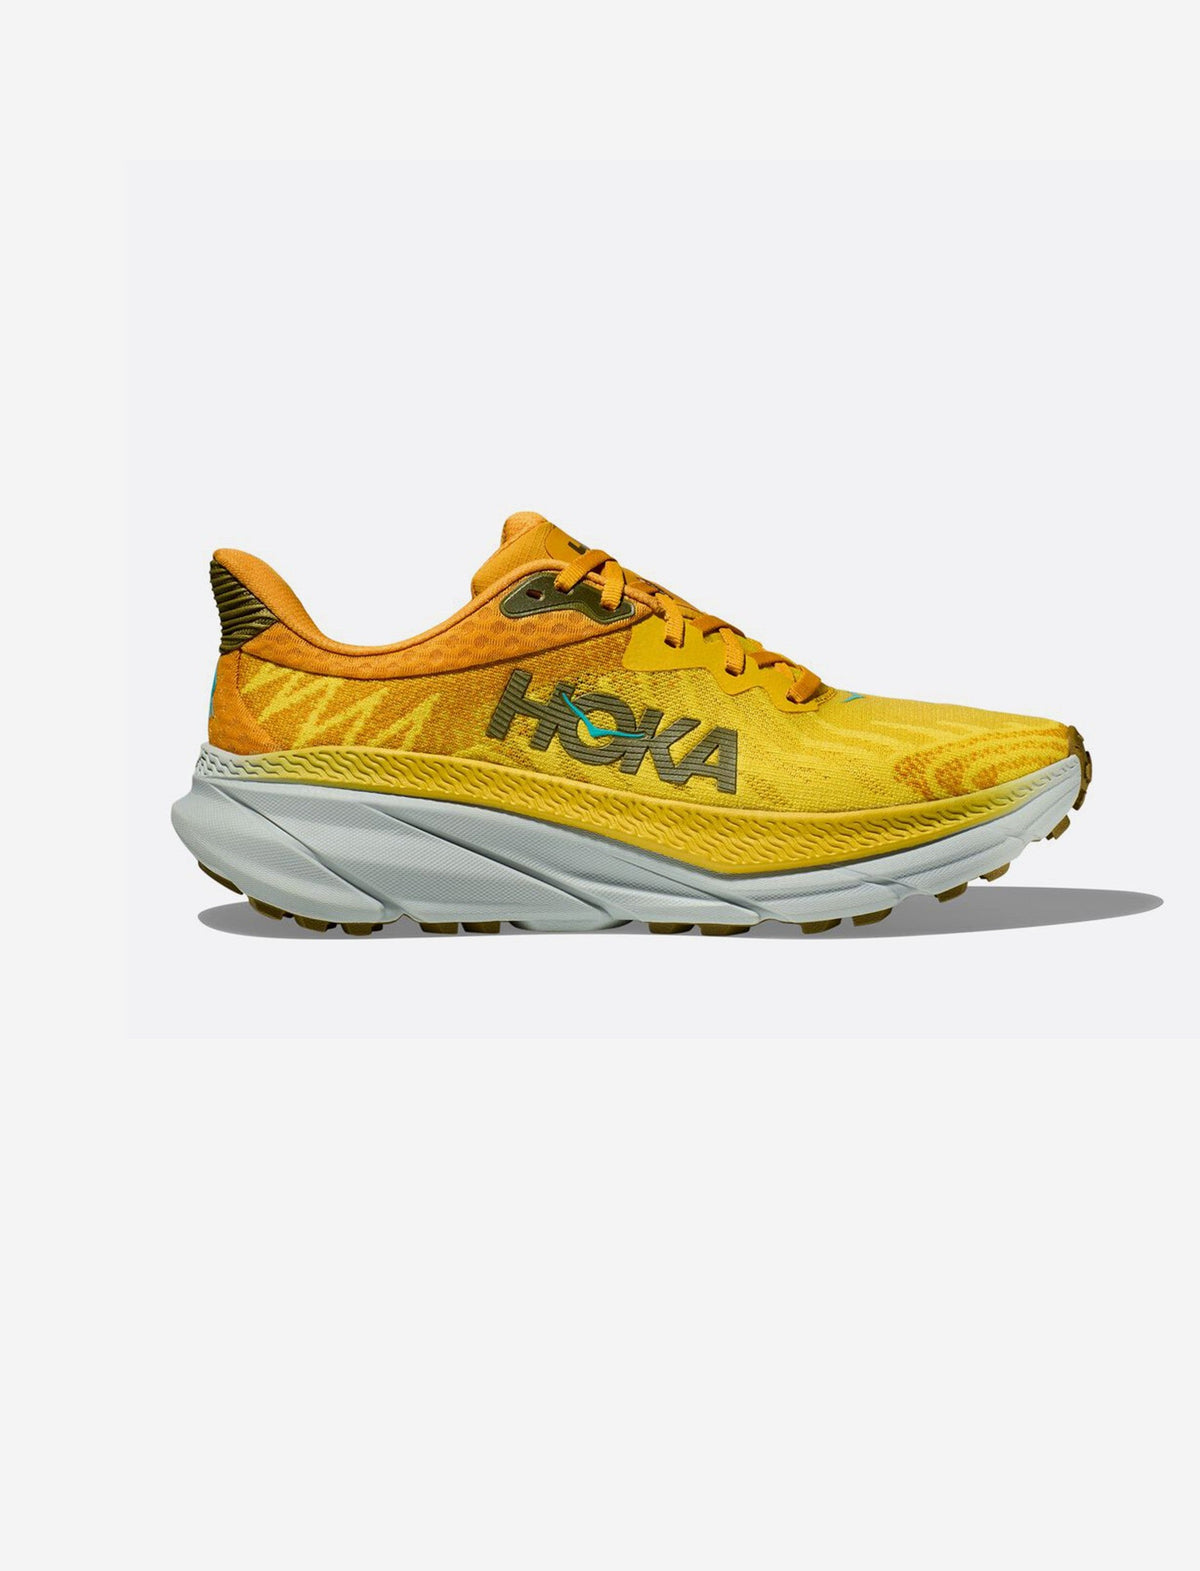 Hoka Challenger 7 - נעלי ספורט גברים הוקה צ'אלנג'ר 7 בצבע כתום פסיפלורה/צהוב-Hoka-41-נאקו